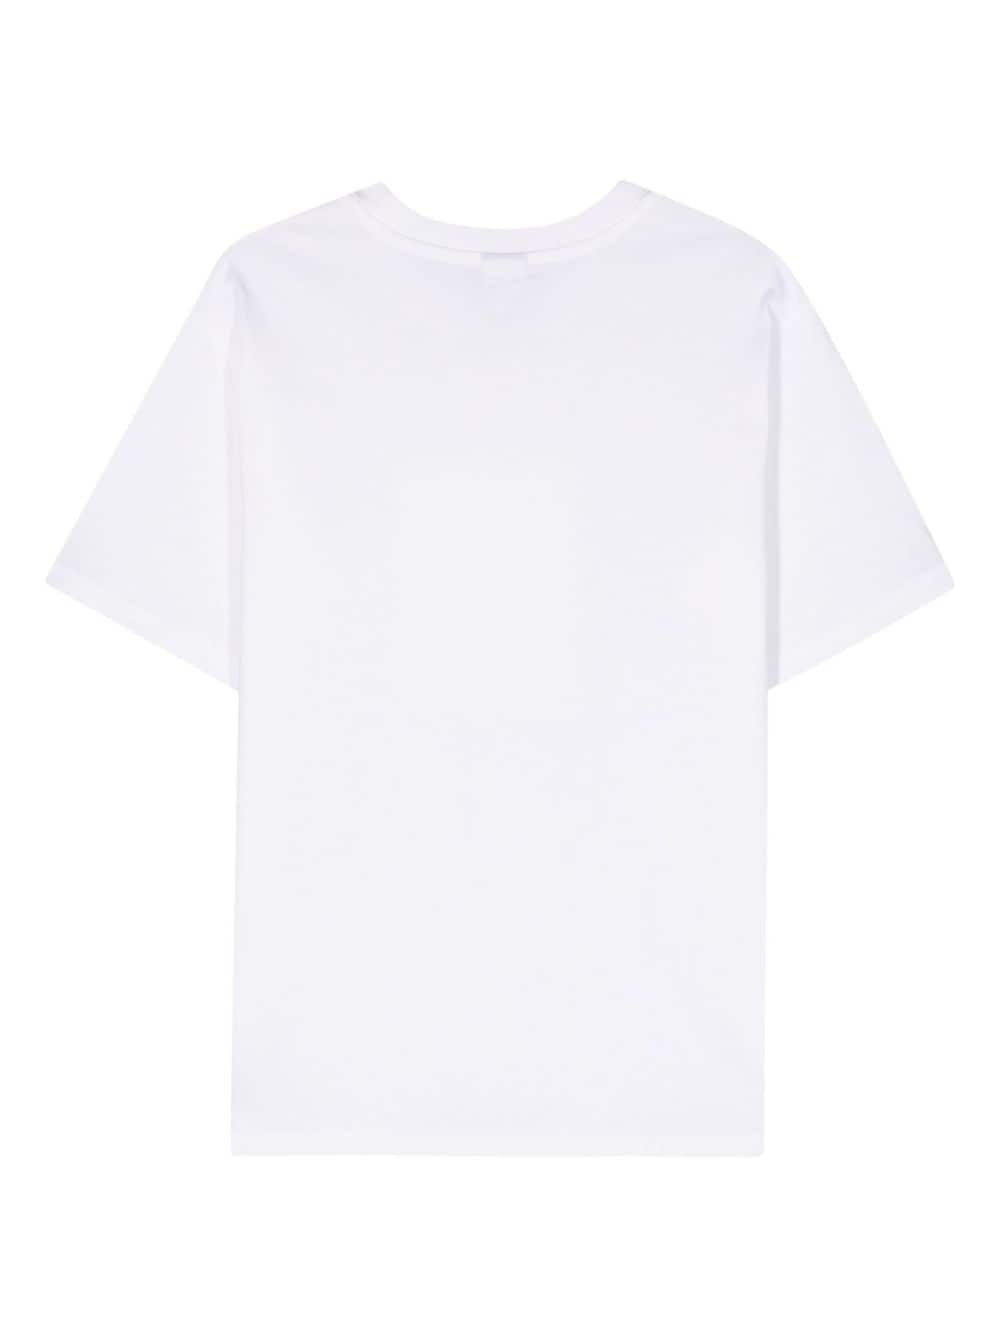 Never Age cotton T-shirt - 2